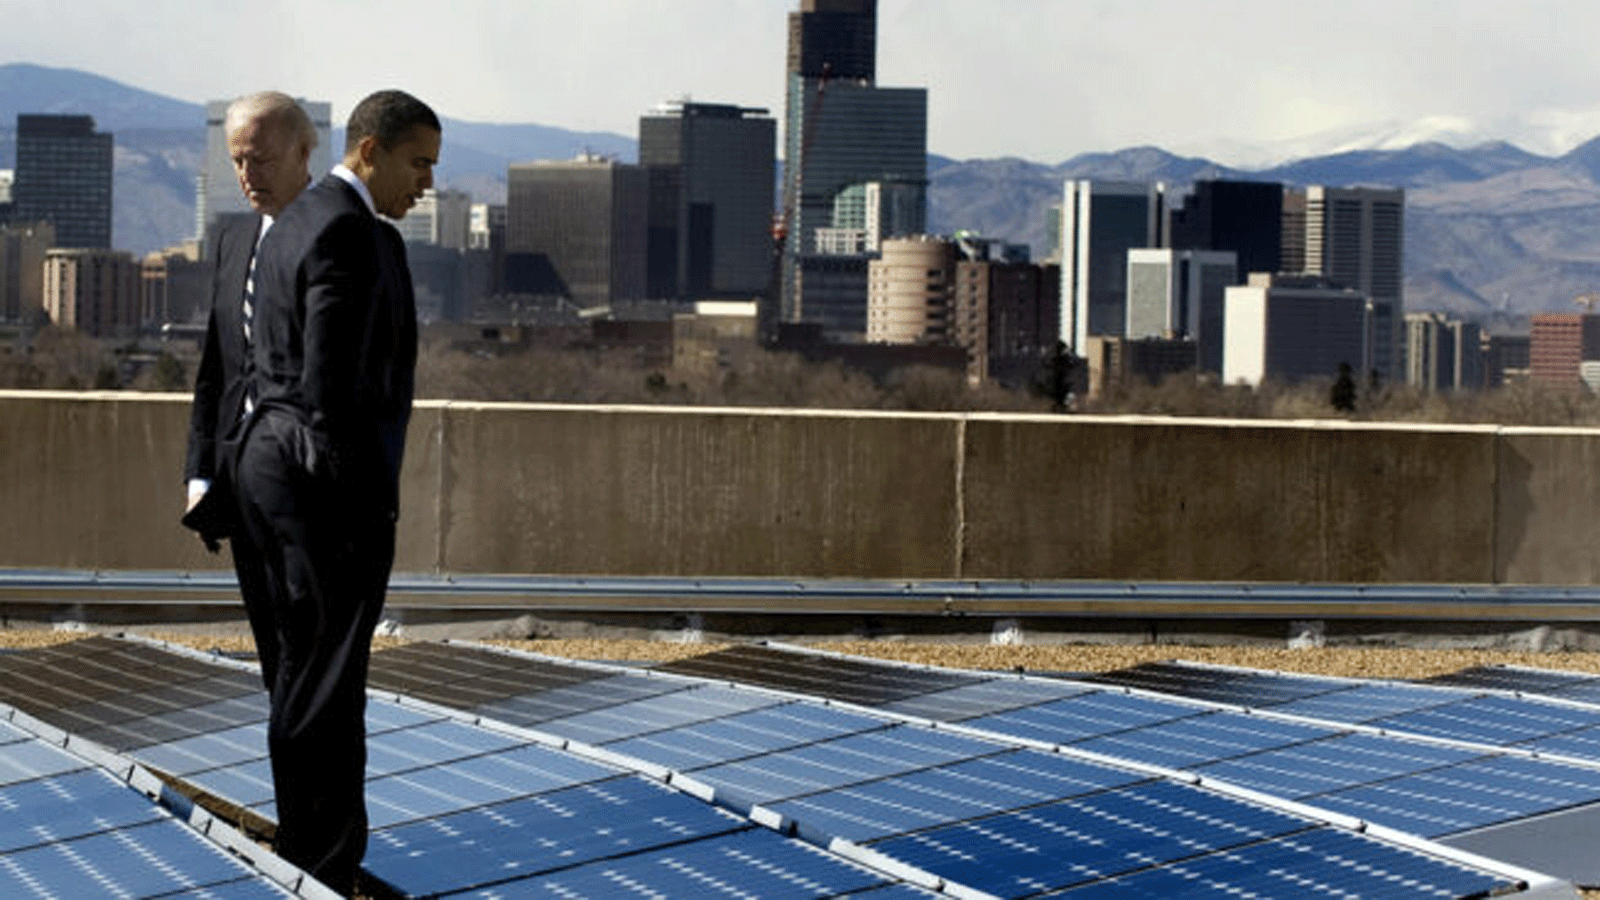 الرئيس الأميريكي السابق باراك أوباما ونائبه (آنذاك)جو بايدن ينظران إلى الألواح الشمسية في دنفر، كولورادو في العام 2009.